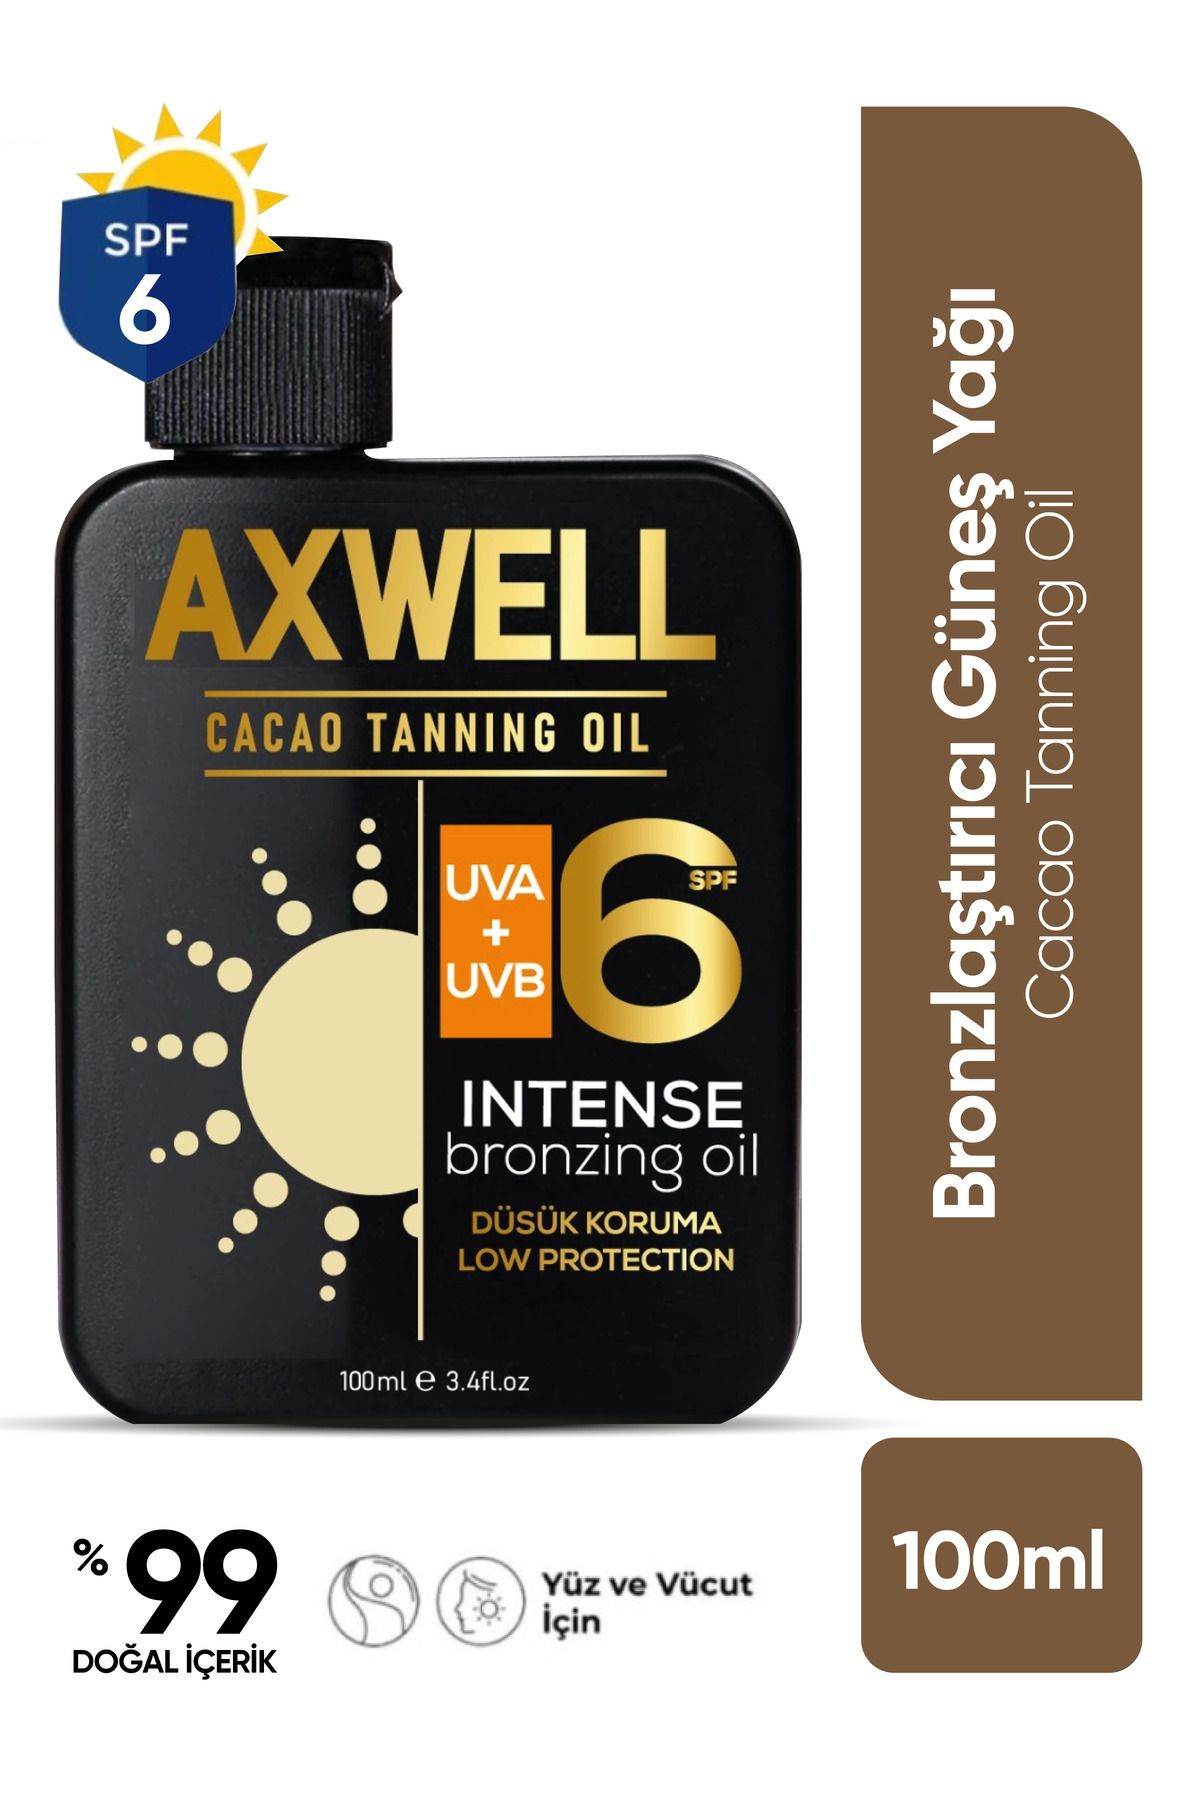 AXWELL Cacao Tanning Oil Bronzlaştırıcı Güneş Yağı Spf 6- 100ml AKY001